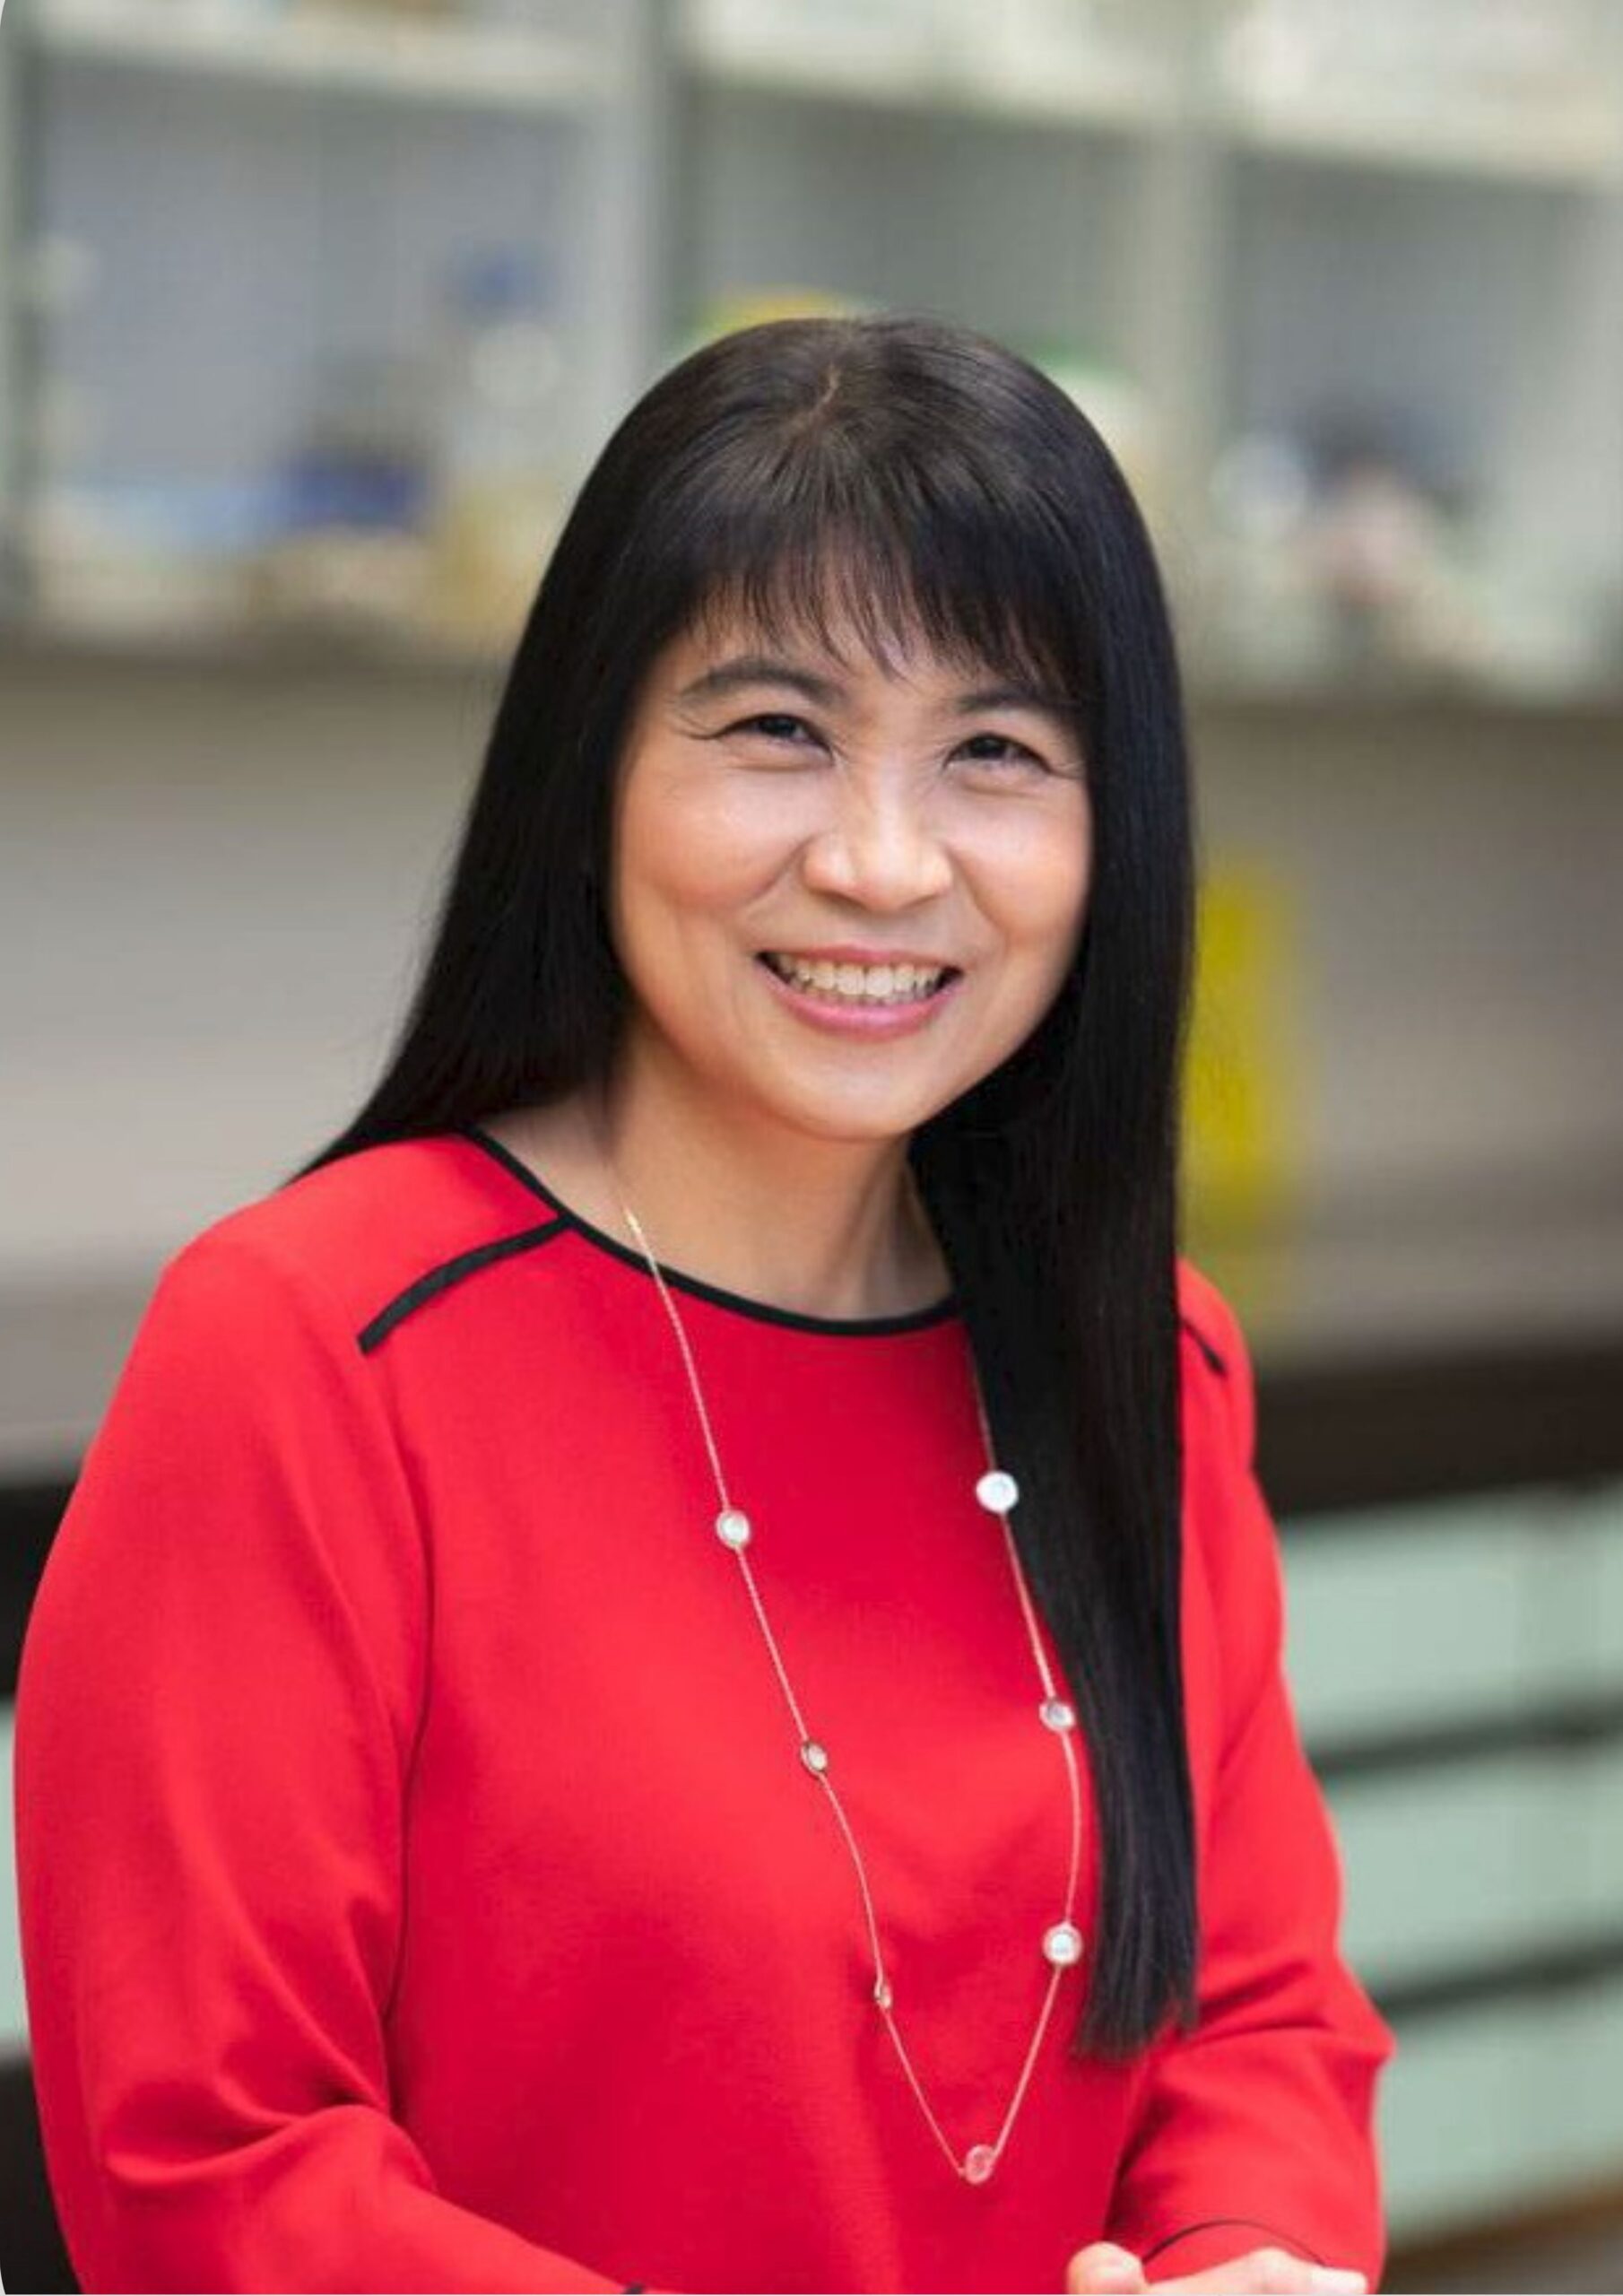 Dr. Aik Ling Tan